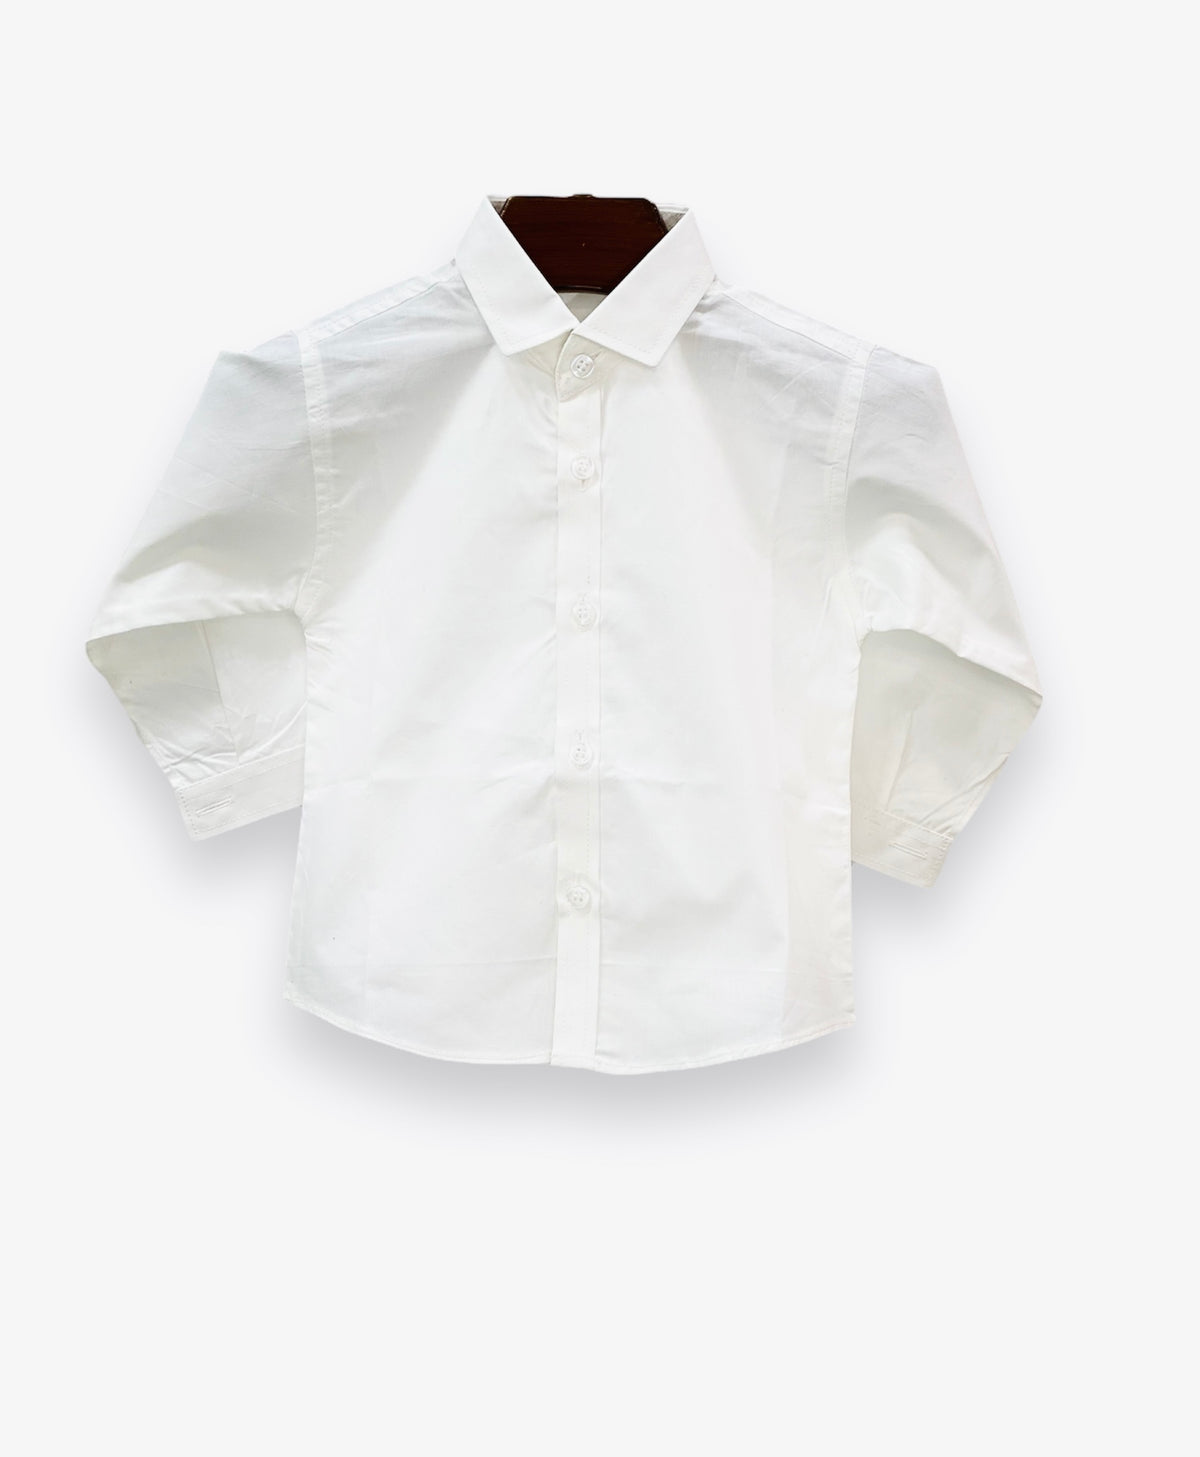 Plain White Formal Shirt